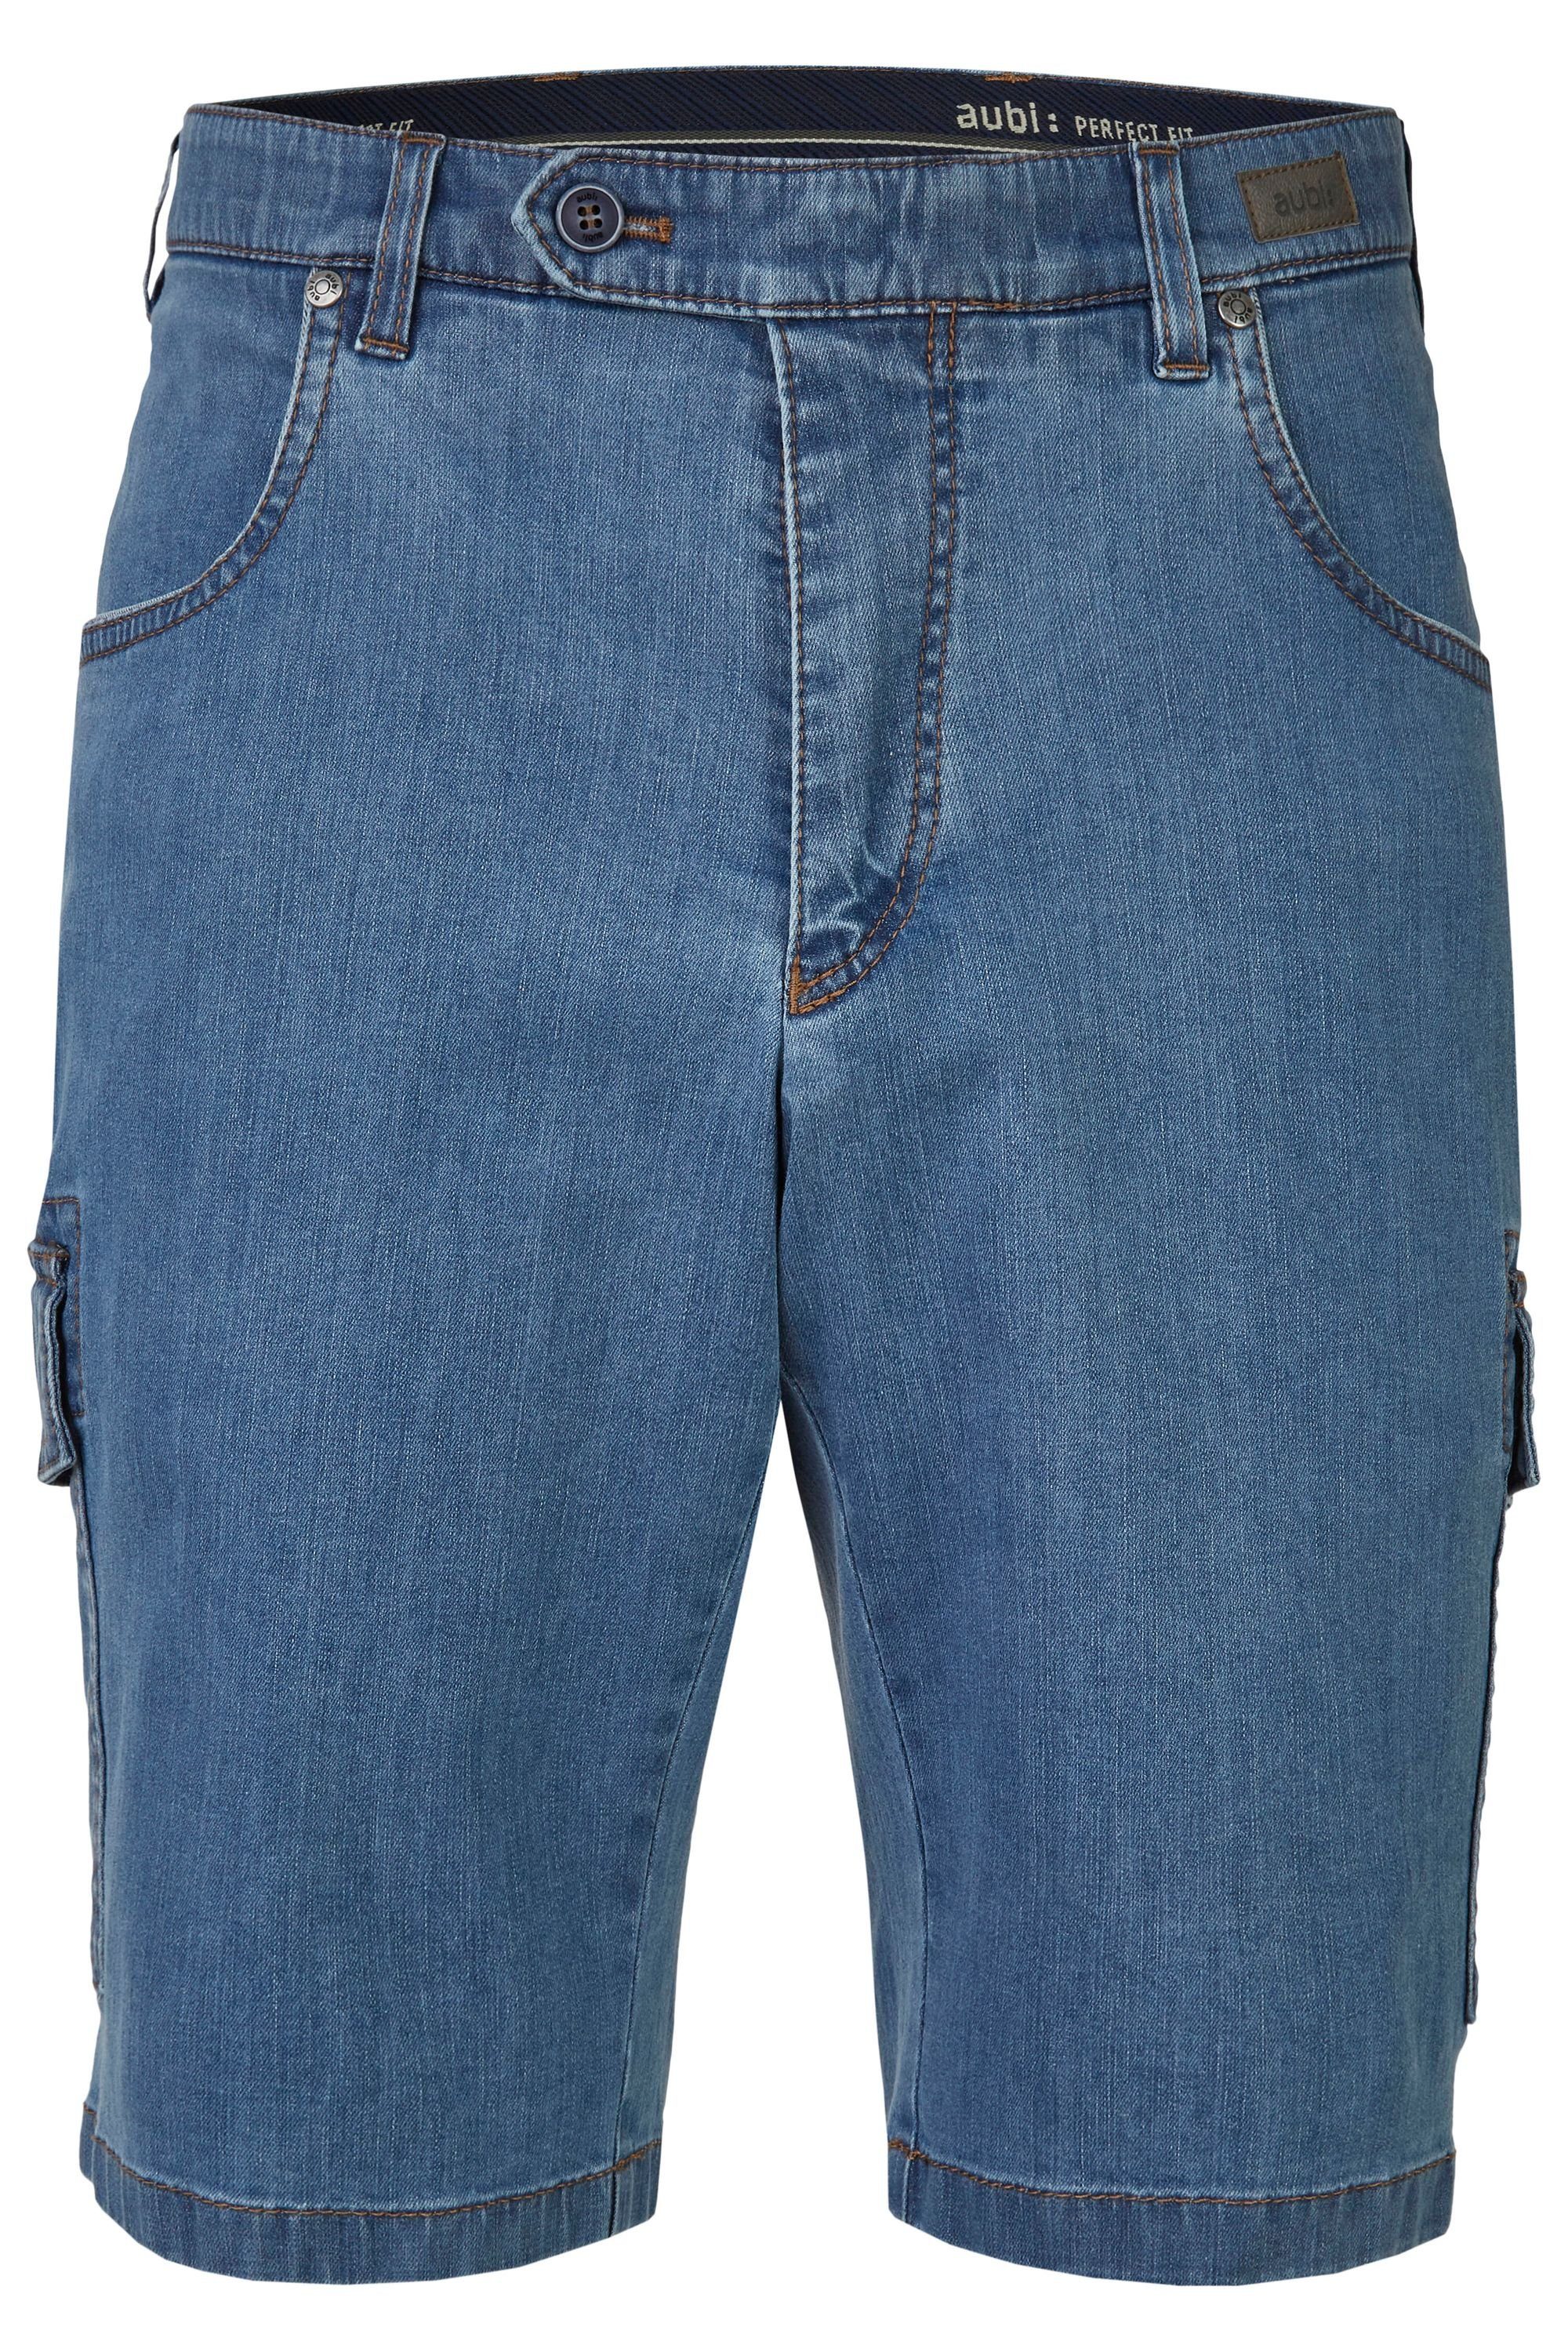 aubi: Bequeme Jeans aubi Perfect Fit Herren Sommer Jeans Cargo Shorts Stretch aus Baumwolle High Flex Modell 616 bleached (43)